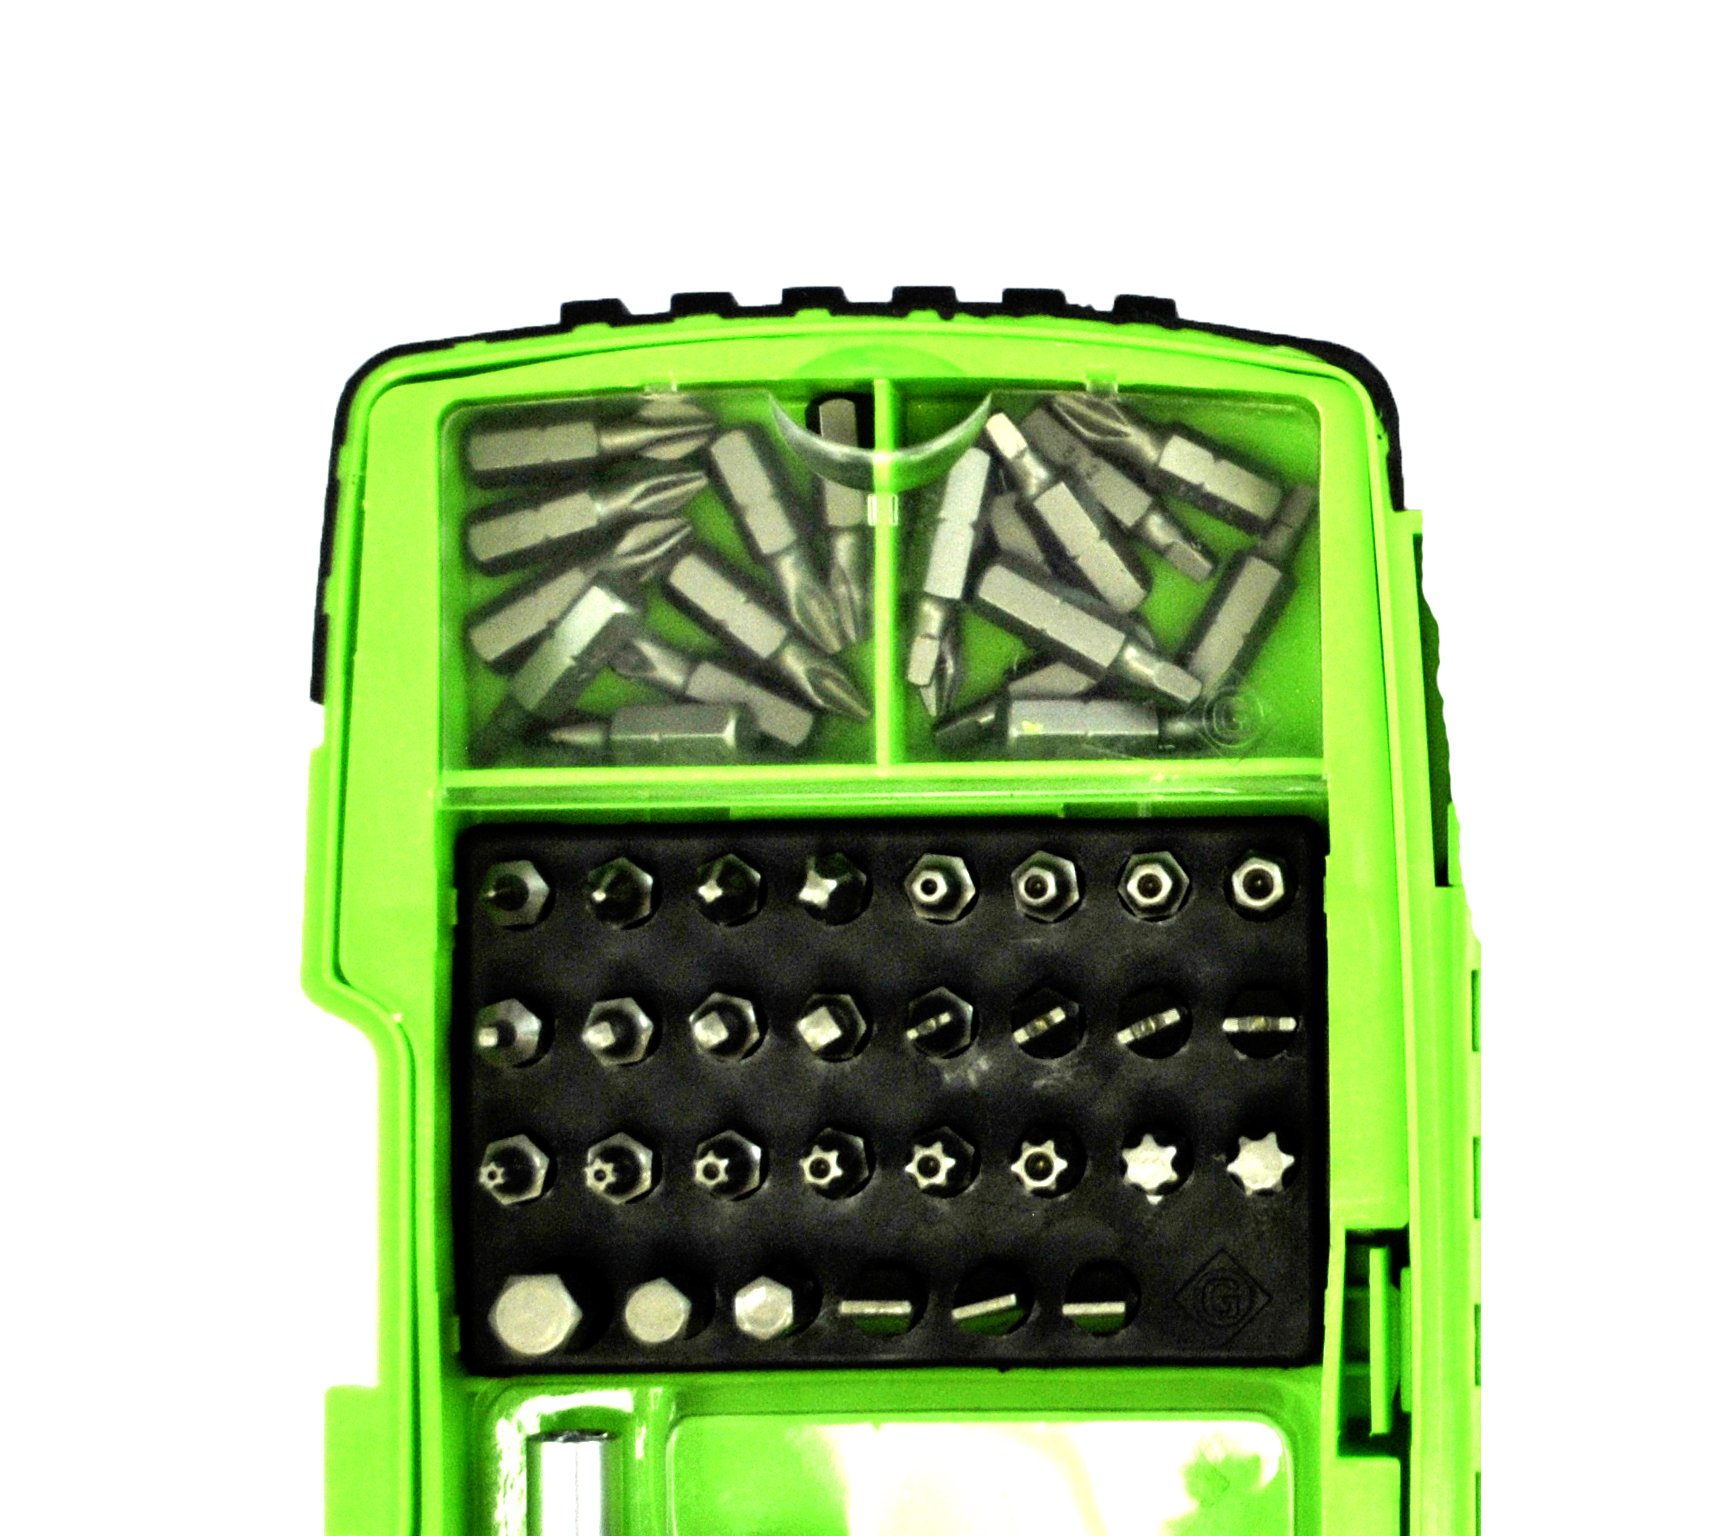 Greenlee DDKIT-1-68 Drill/Driver Set Kit, 12.4 x 10.6 x 2.4